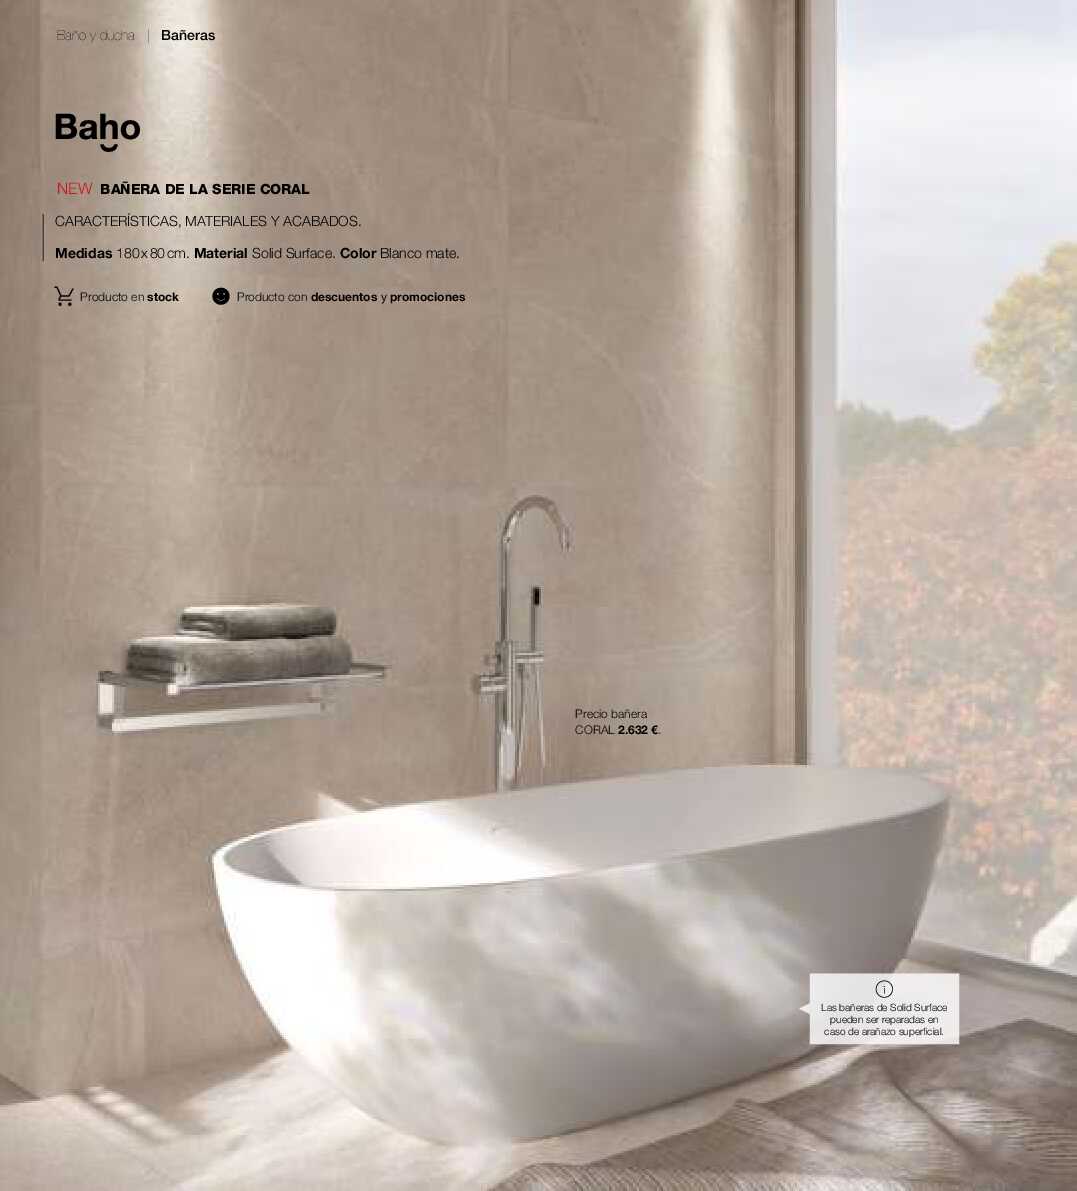 Catálogo de baños Gamma. Página 297